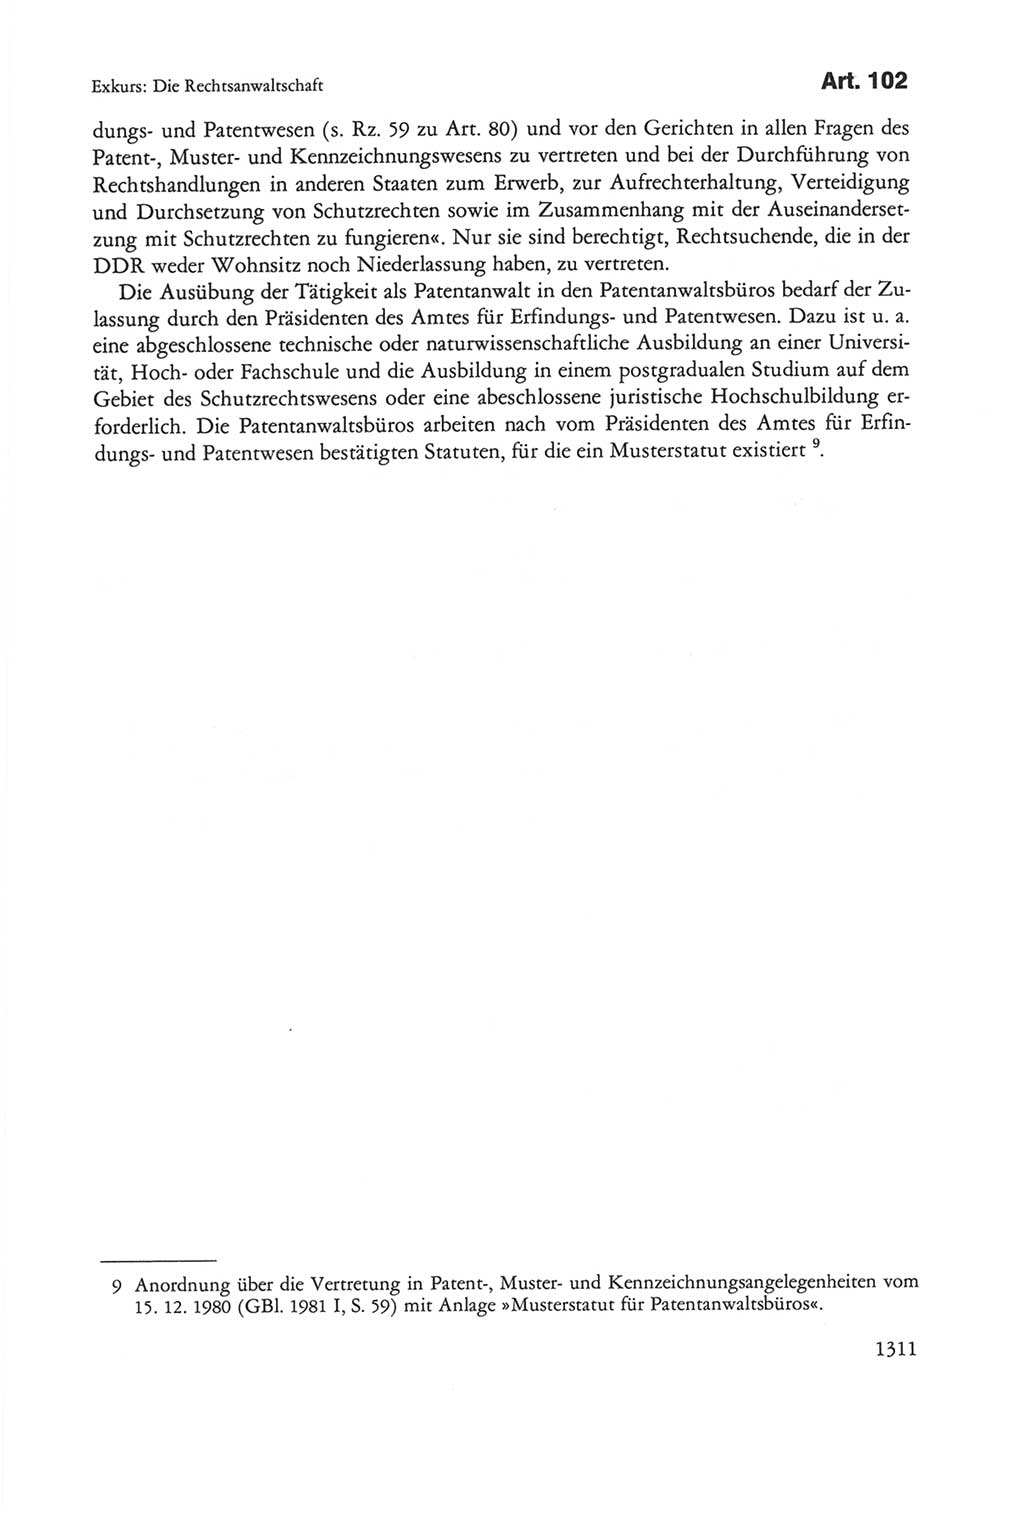 Die sozialistische Verfassung der Deutschen Demokratischen Republik (DDR), Kommentar 1982, Seite 1311 (Soz. Verf. DDR Komm. 1982, S. 1311)